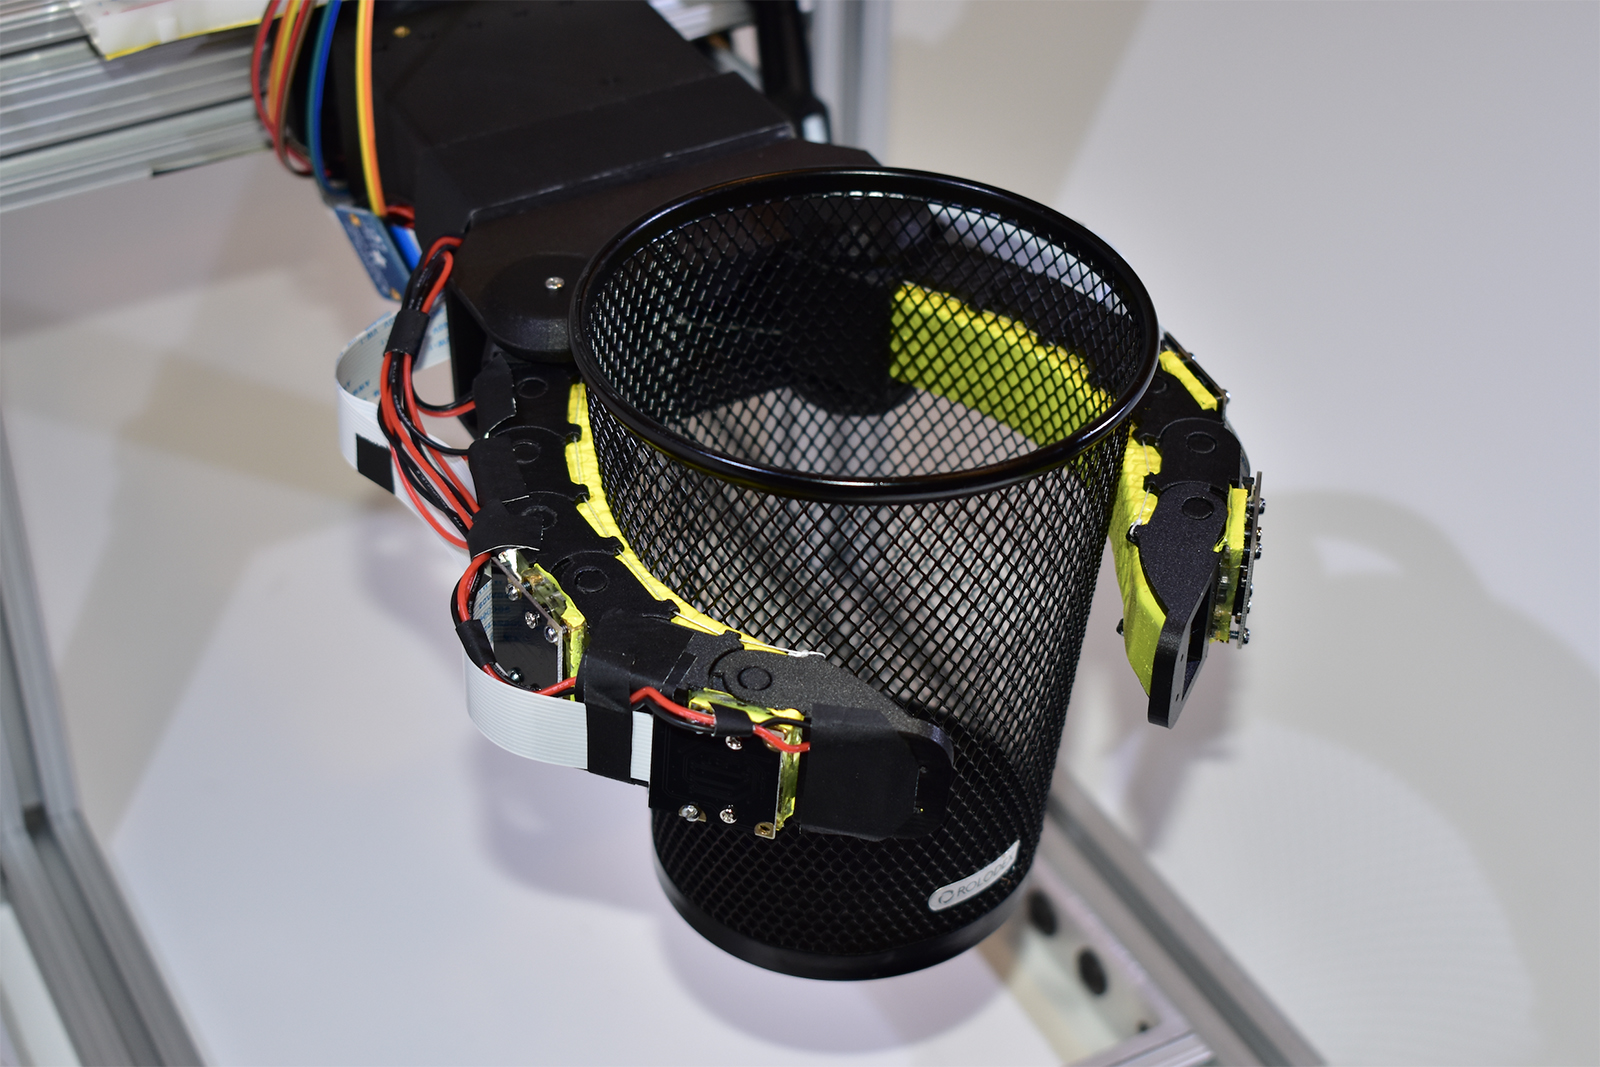 mit csail gelflex robot hand camera gripper can copy